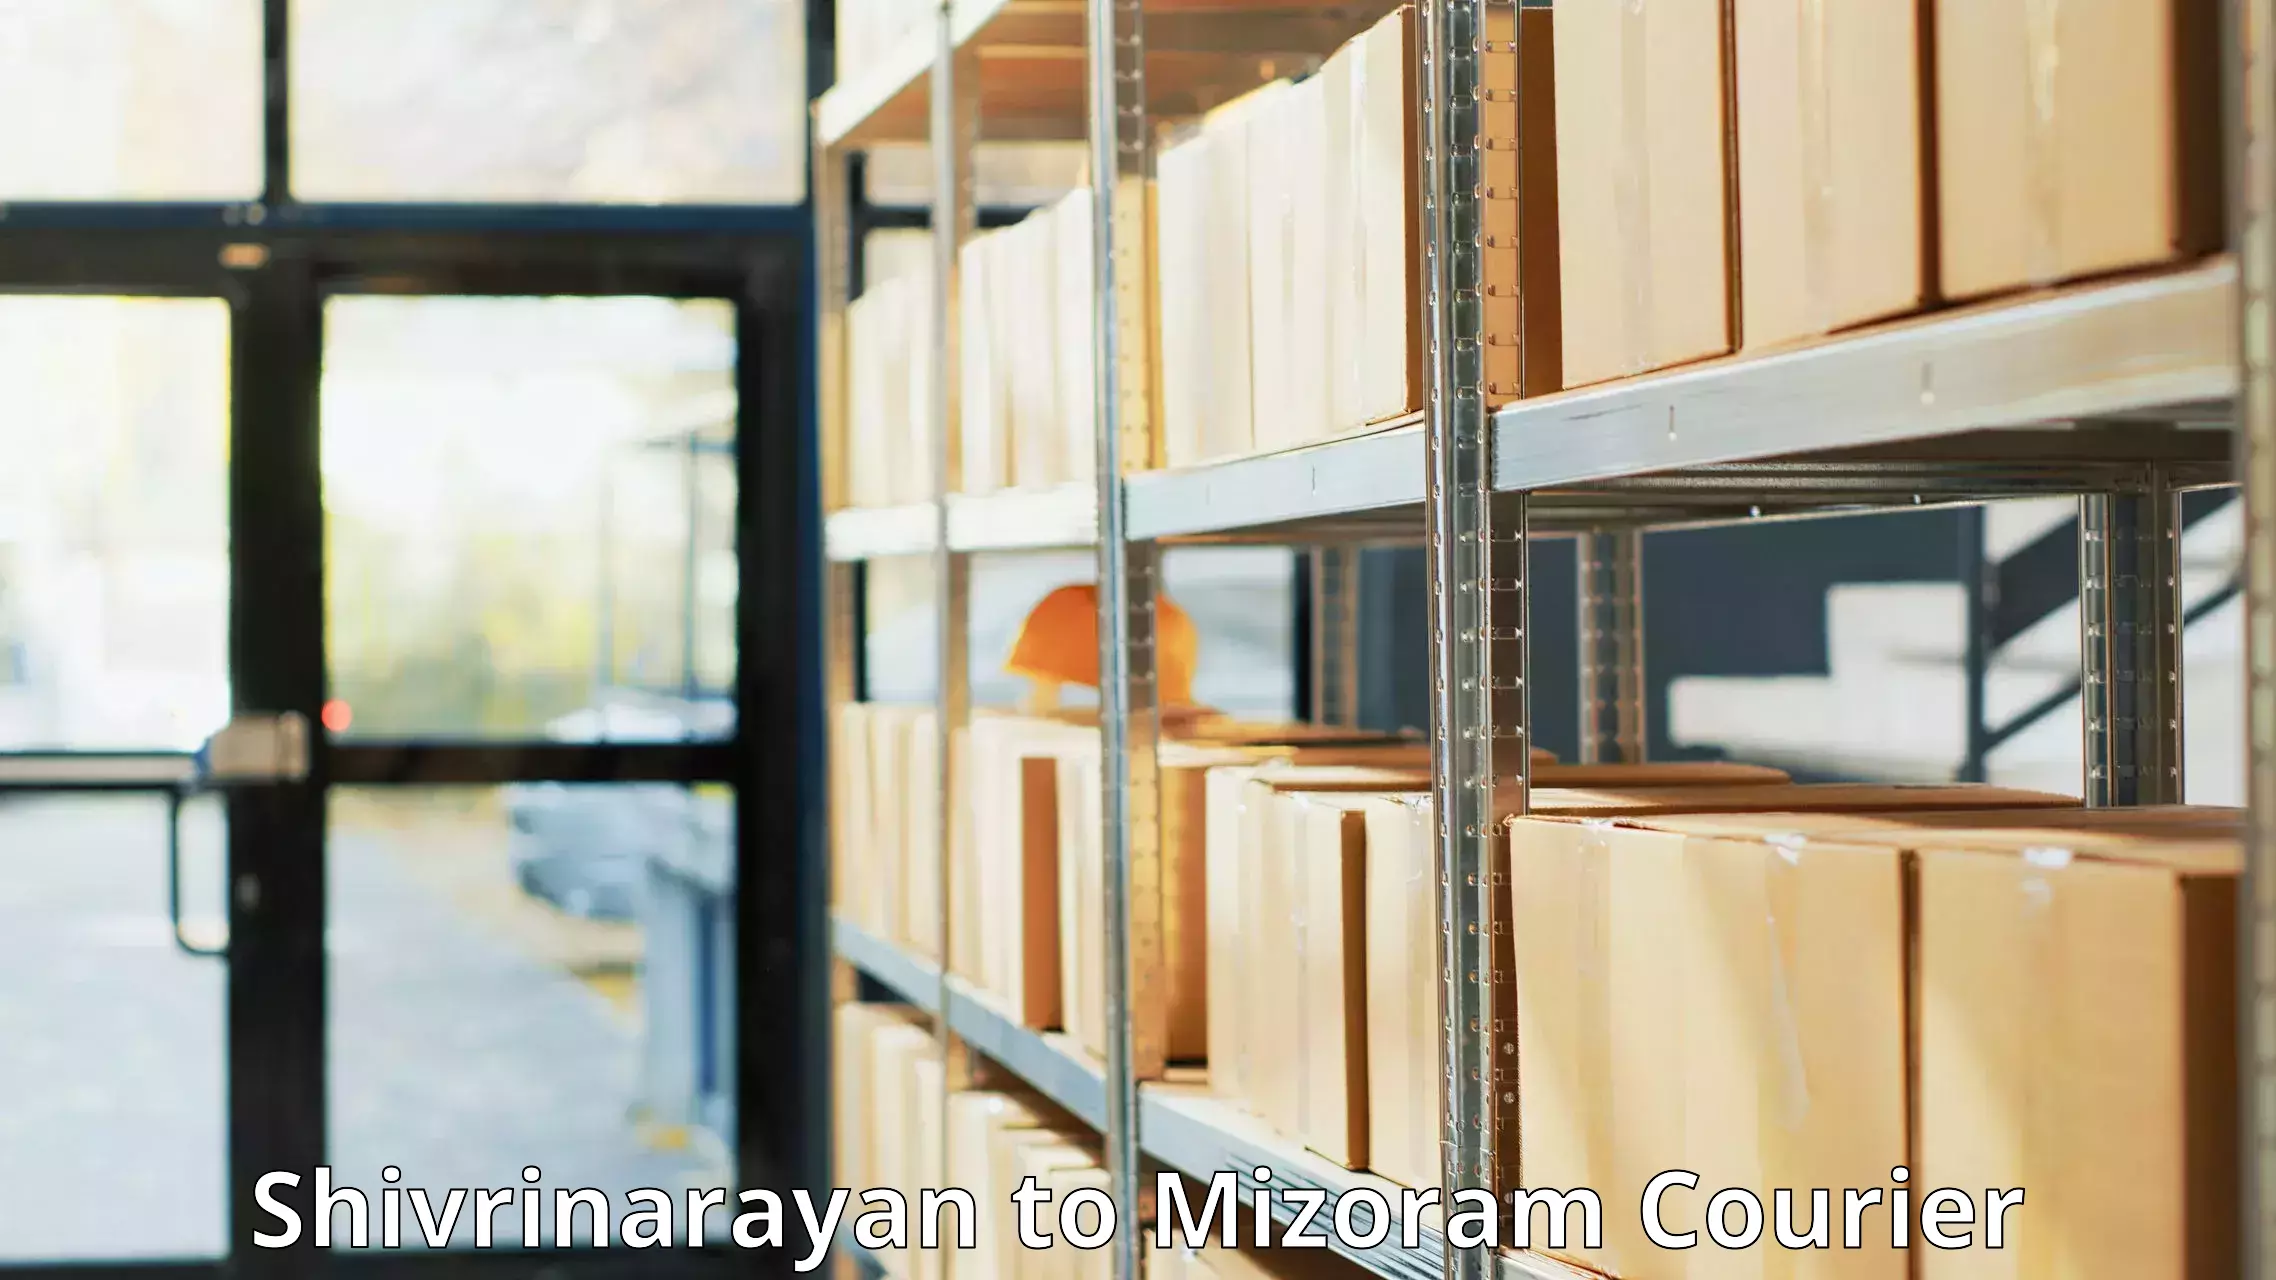 Flexible shipping options Shivrinarayan to Mizoram